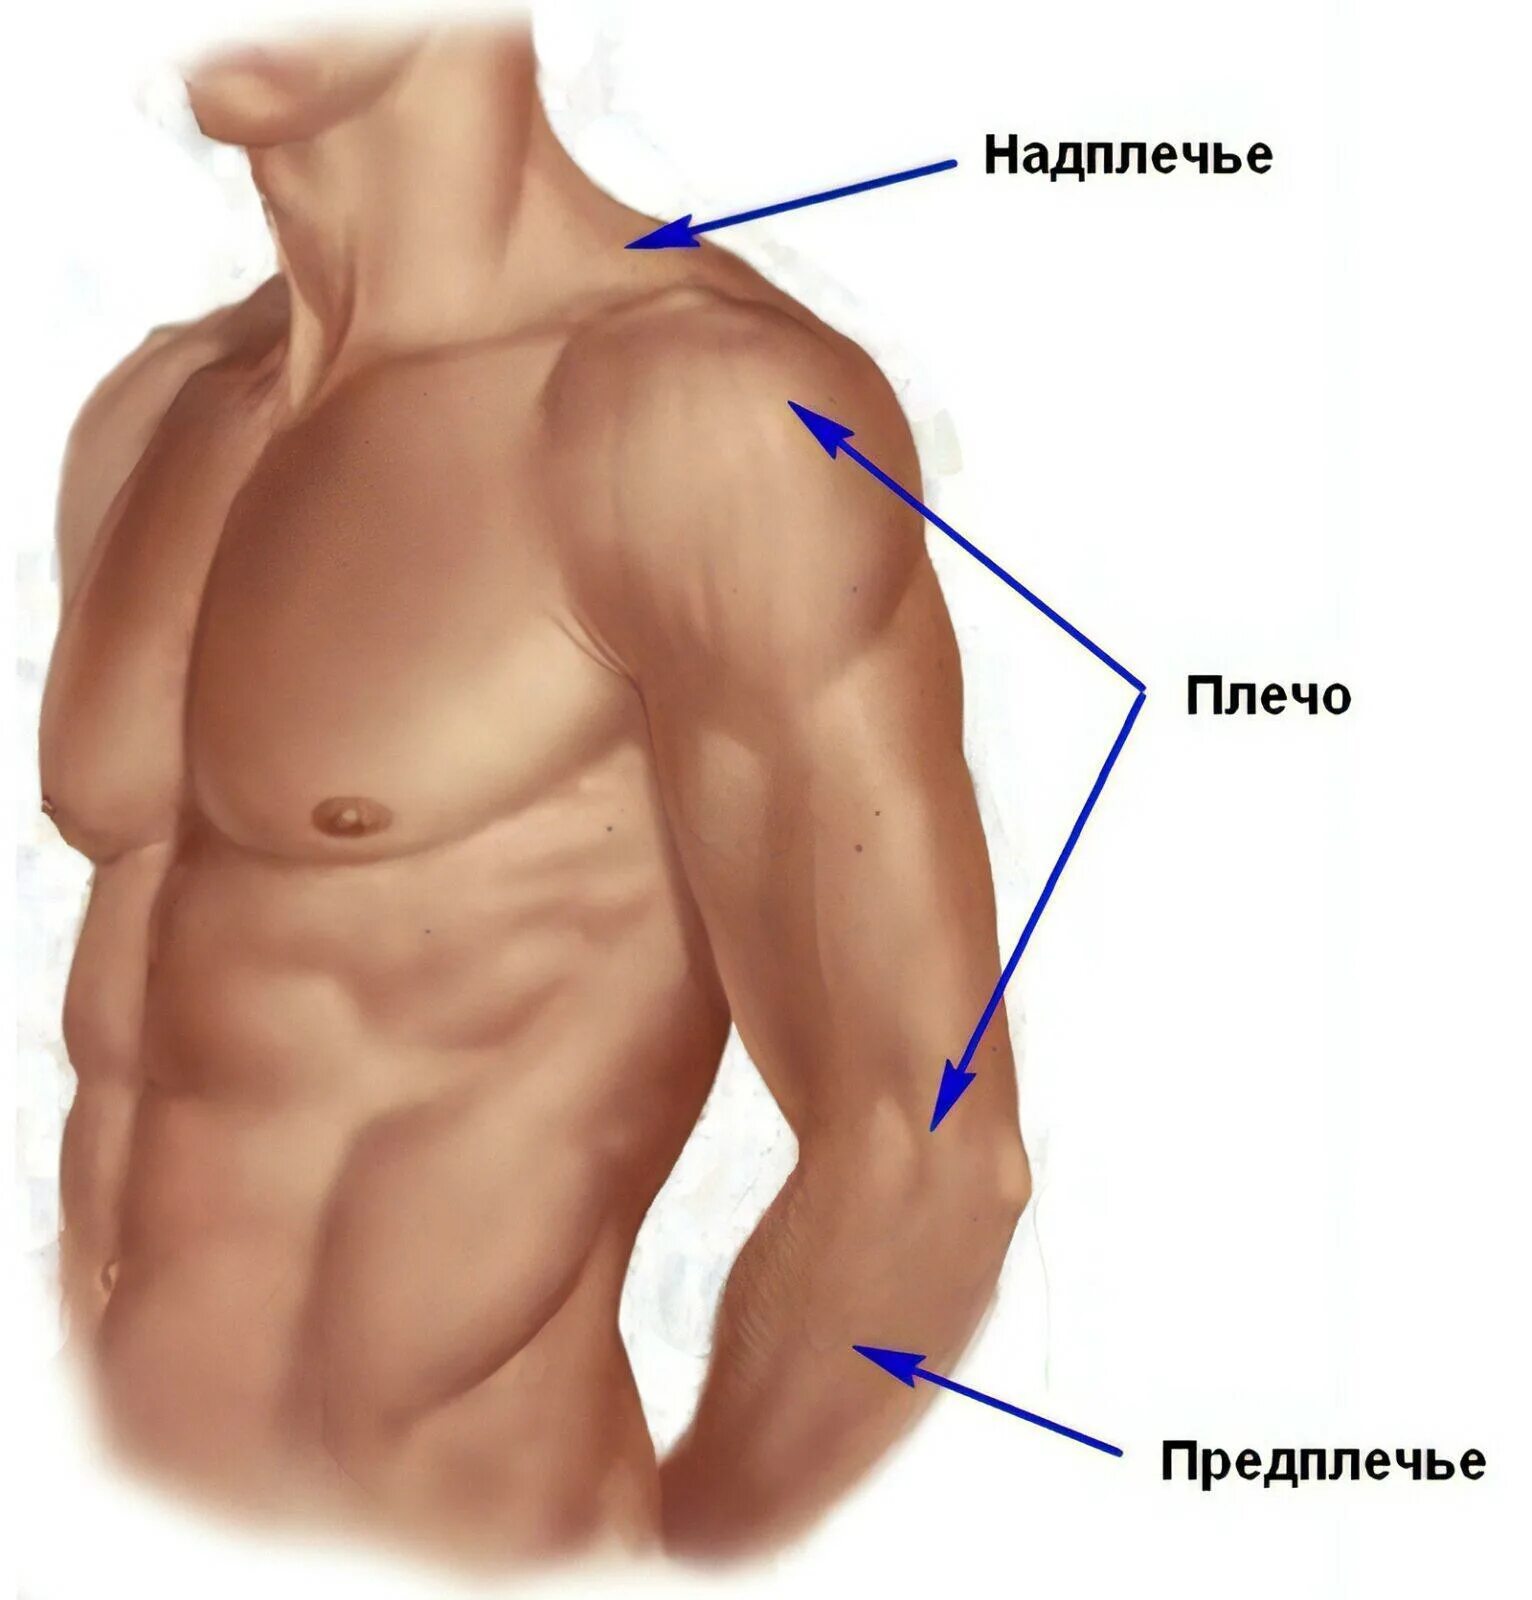 Где находится картинки. Плечо и предплечье анатомия. Где плечо а где предплечье у человека. Предплечье плечо надплечье. Анатомия предплечья человека.